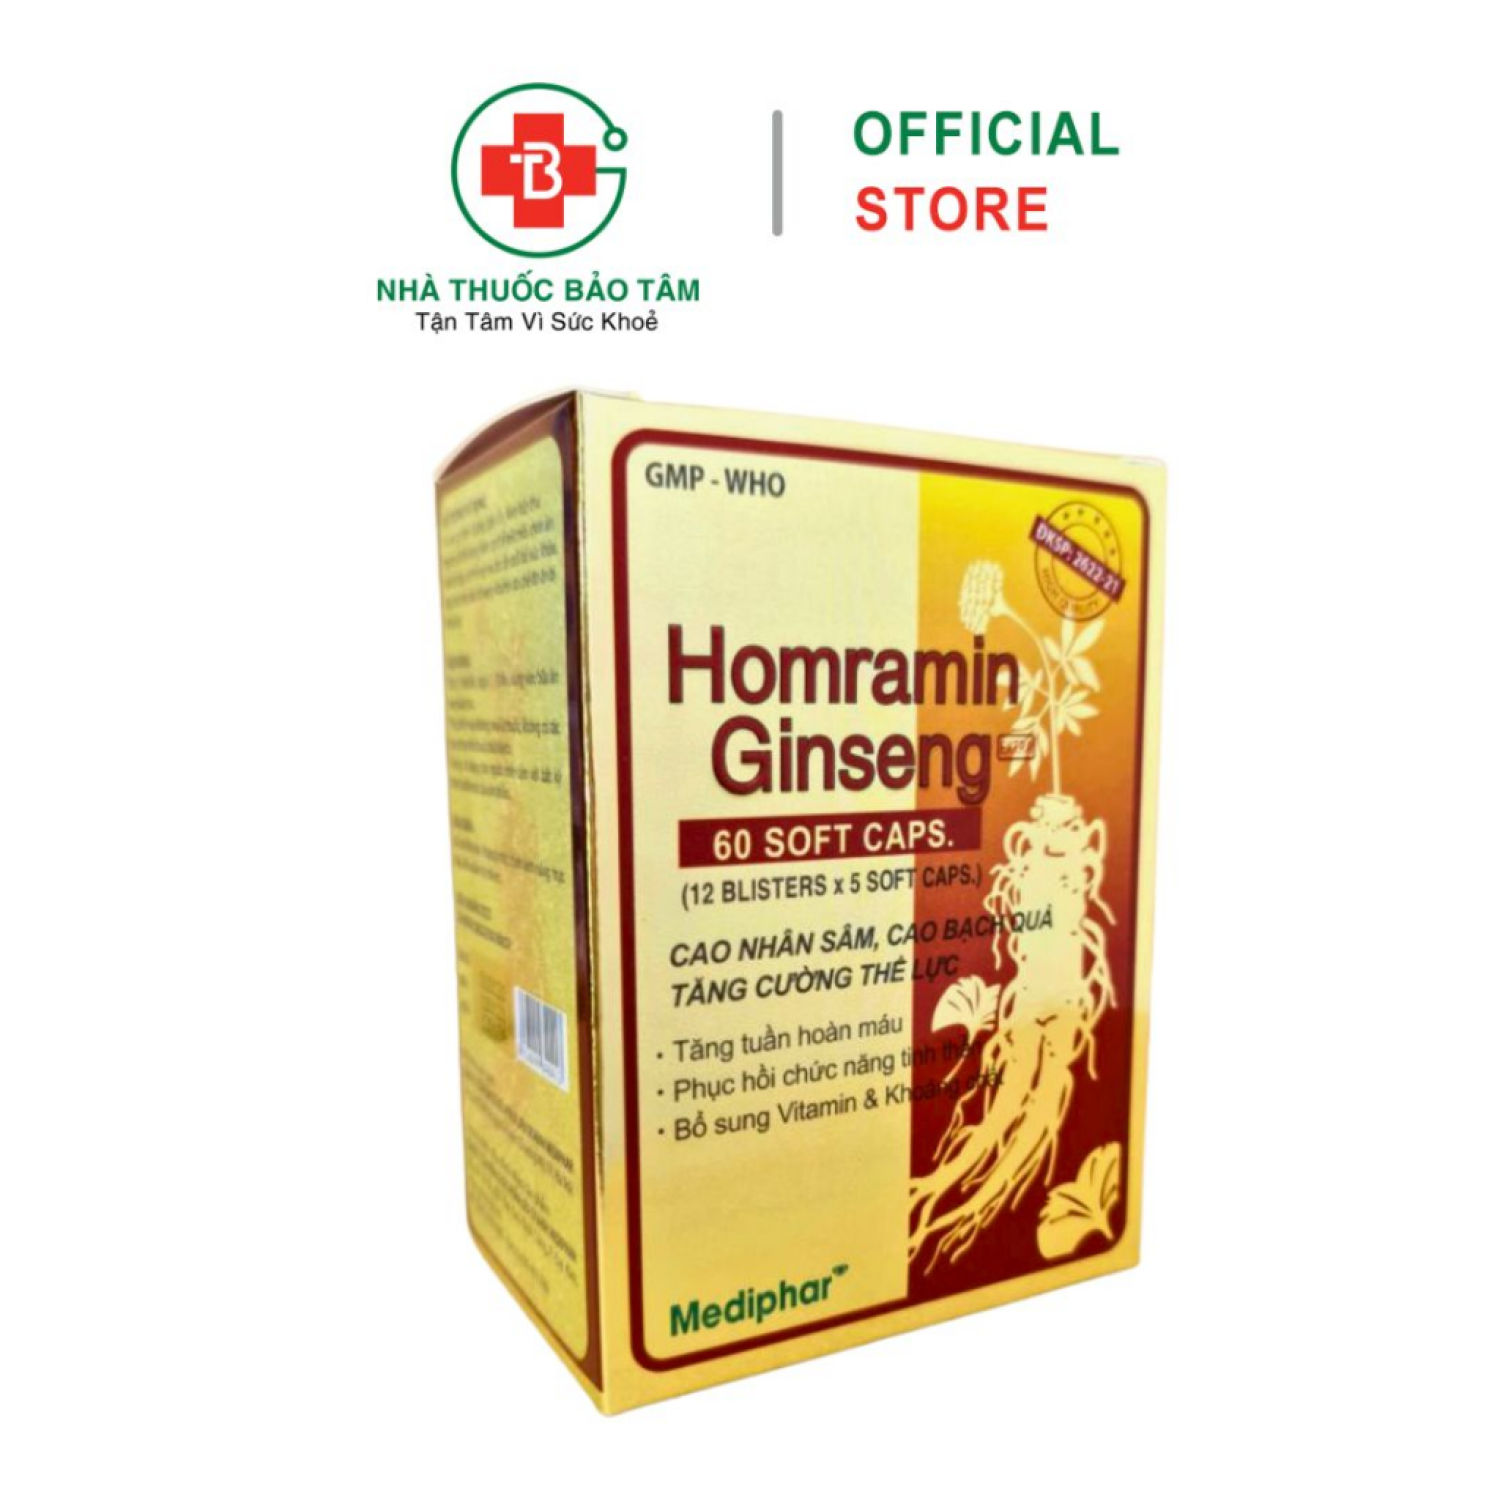 Homramin Ginseng nhân sâm giúp tăng cường bồi bổ sức khỏe